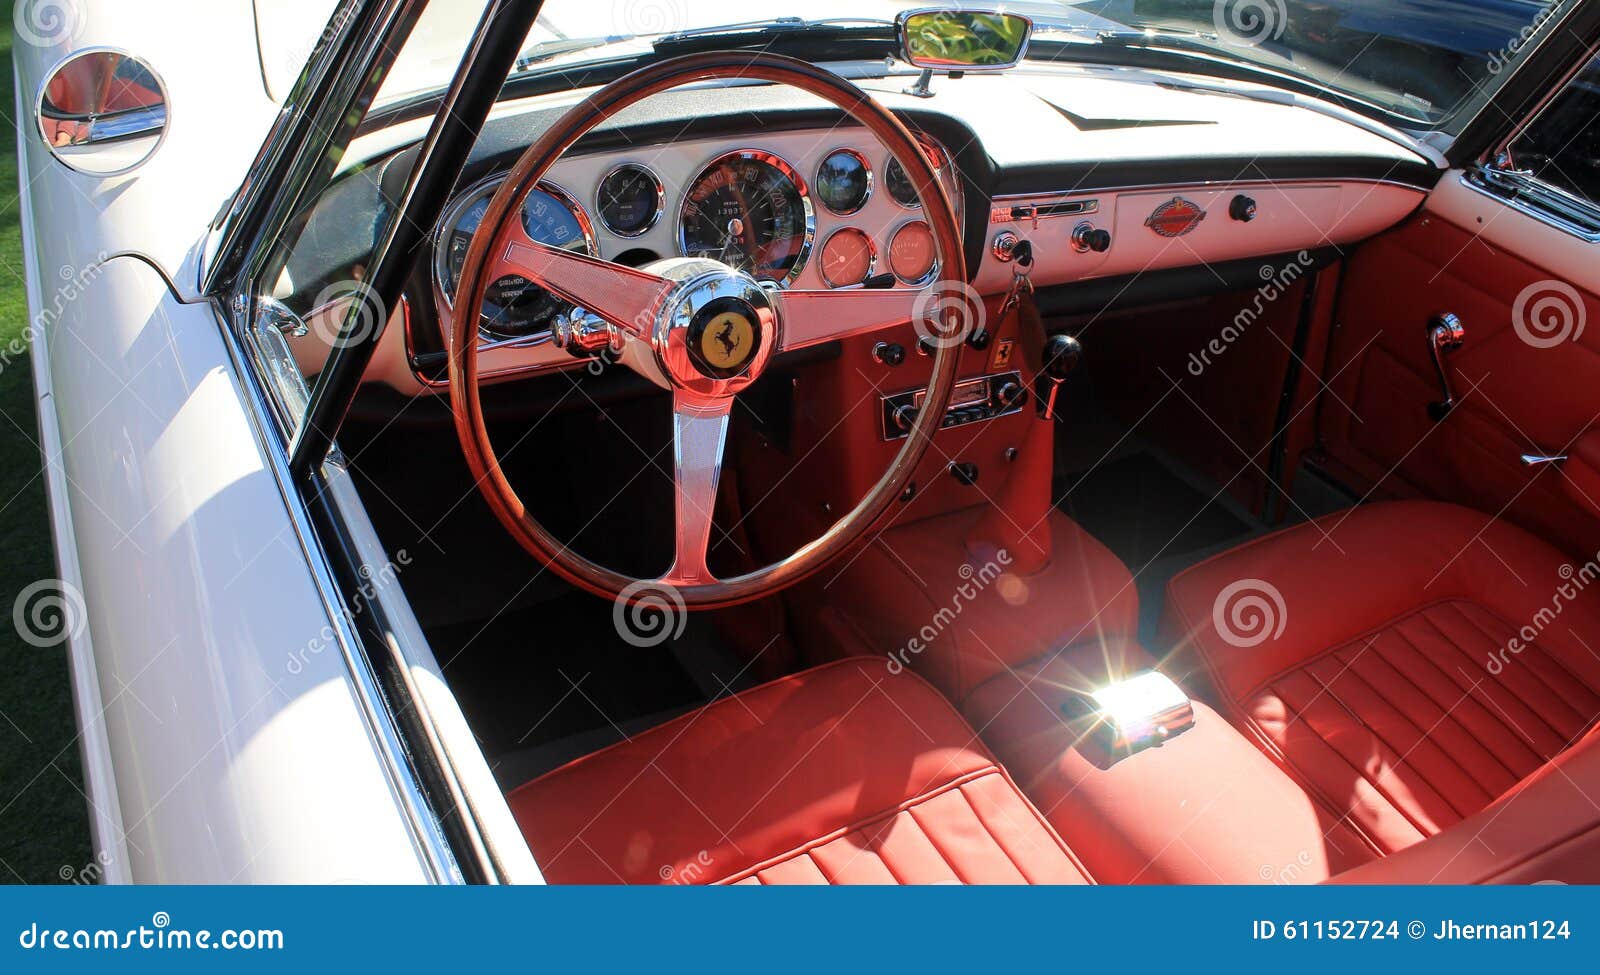 Classic Luxury White Ferrari Interior Editorial Stock Image